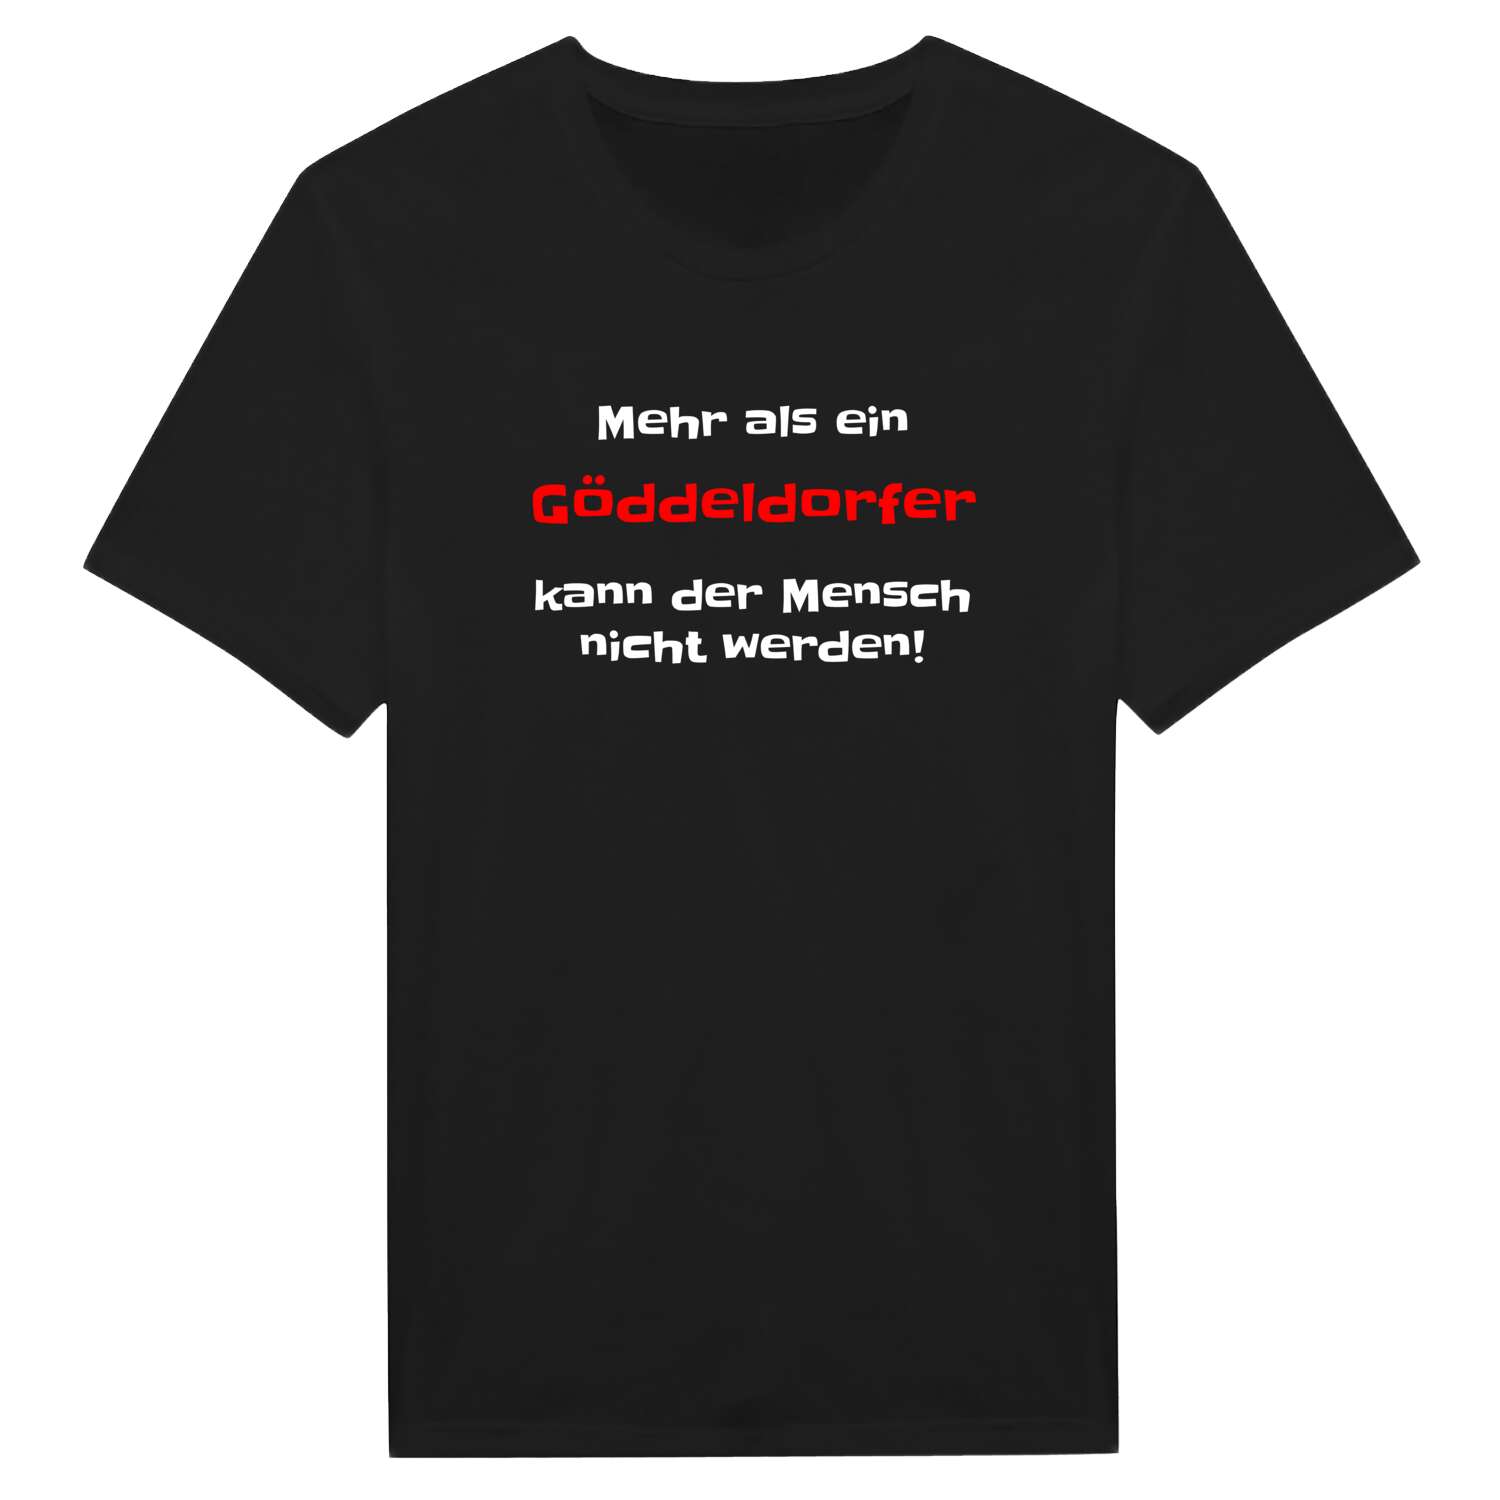 Göddeldorf T-Shirt »Mehr als ein«